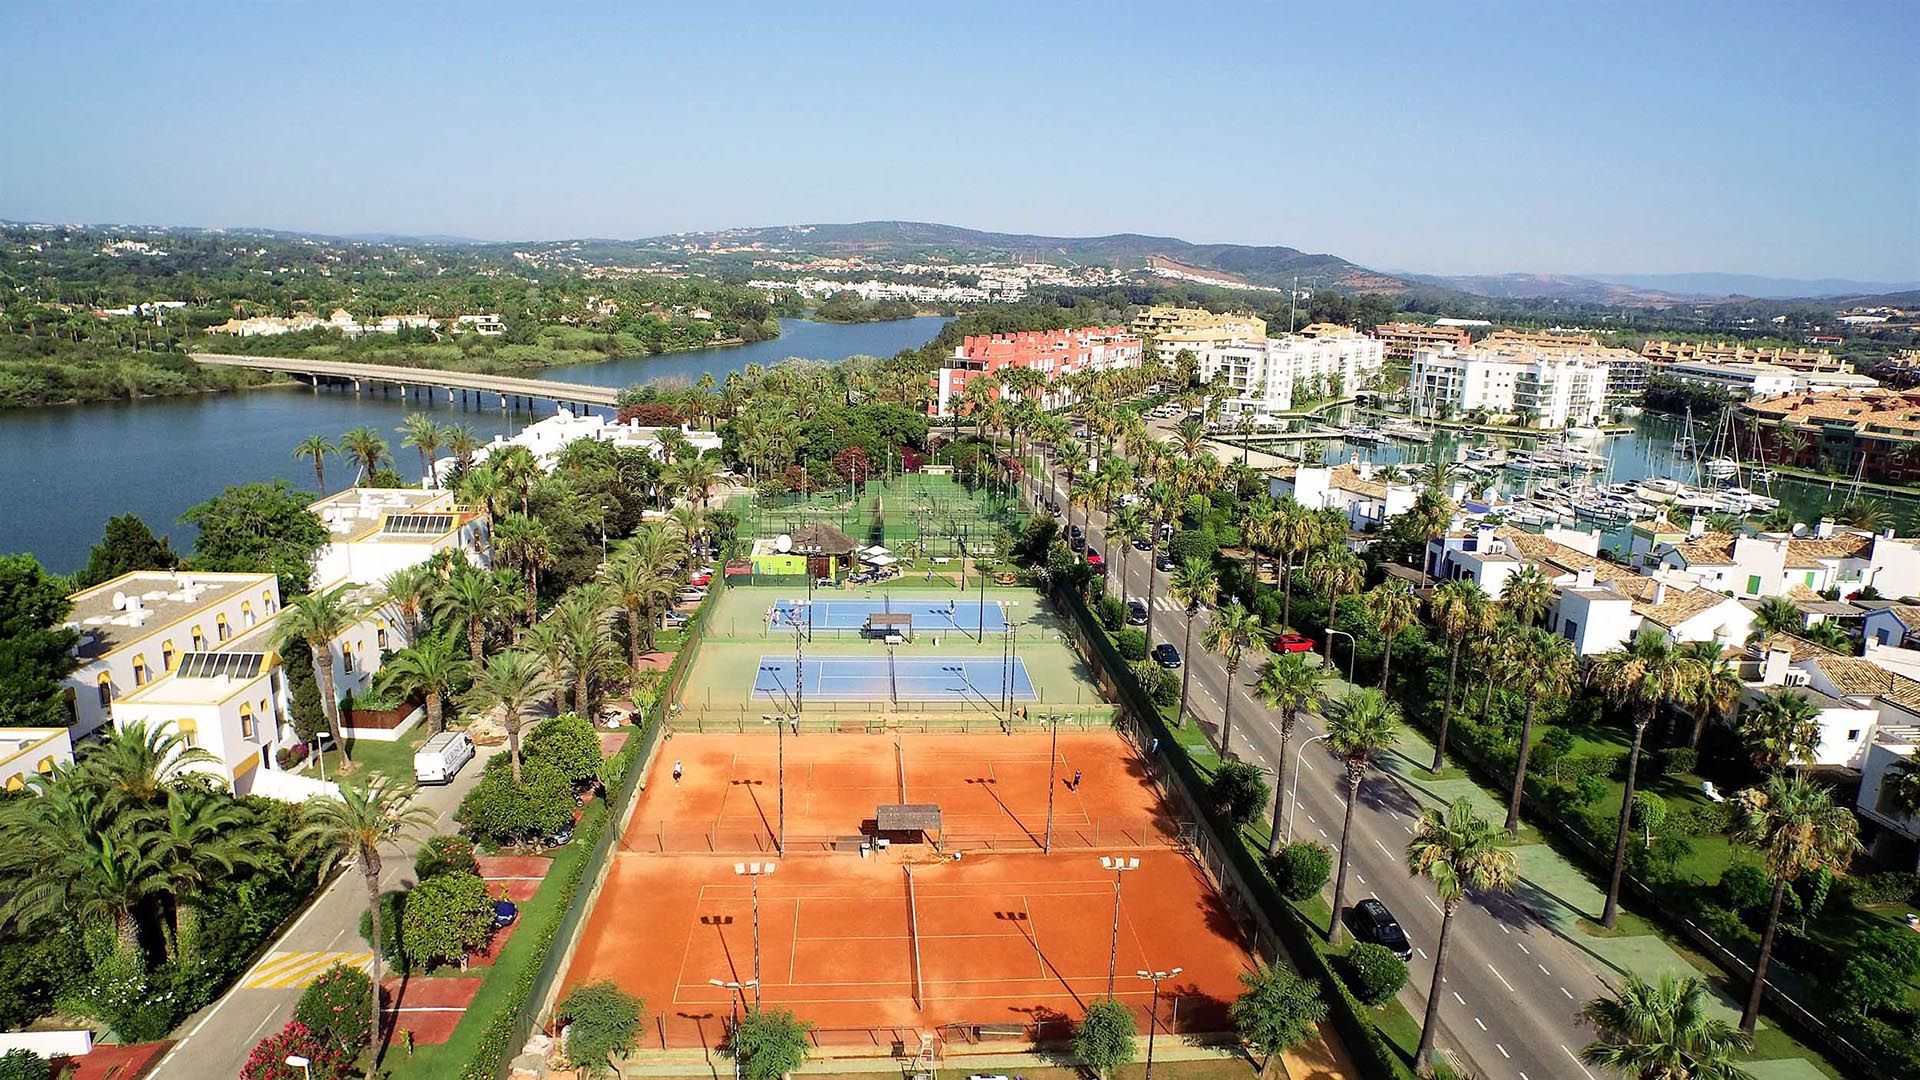 Drone View of El Octógono Paddle Tennis Club, located in Marina Sotogrande.